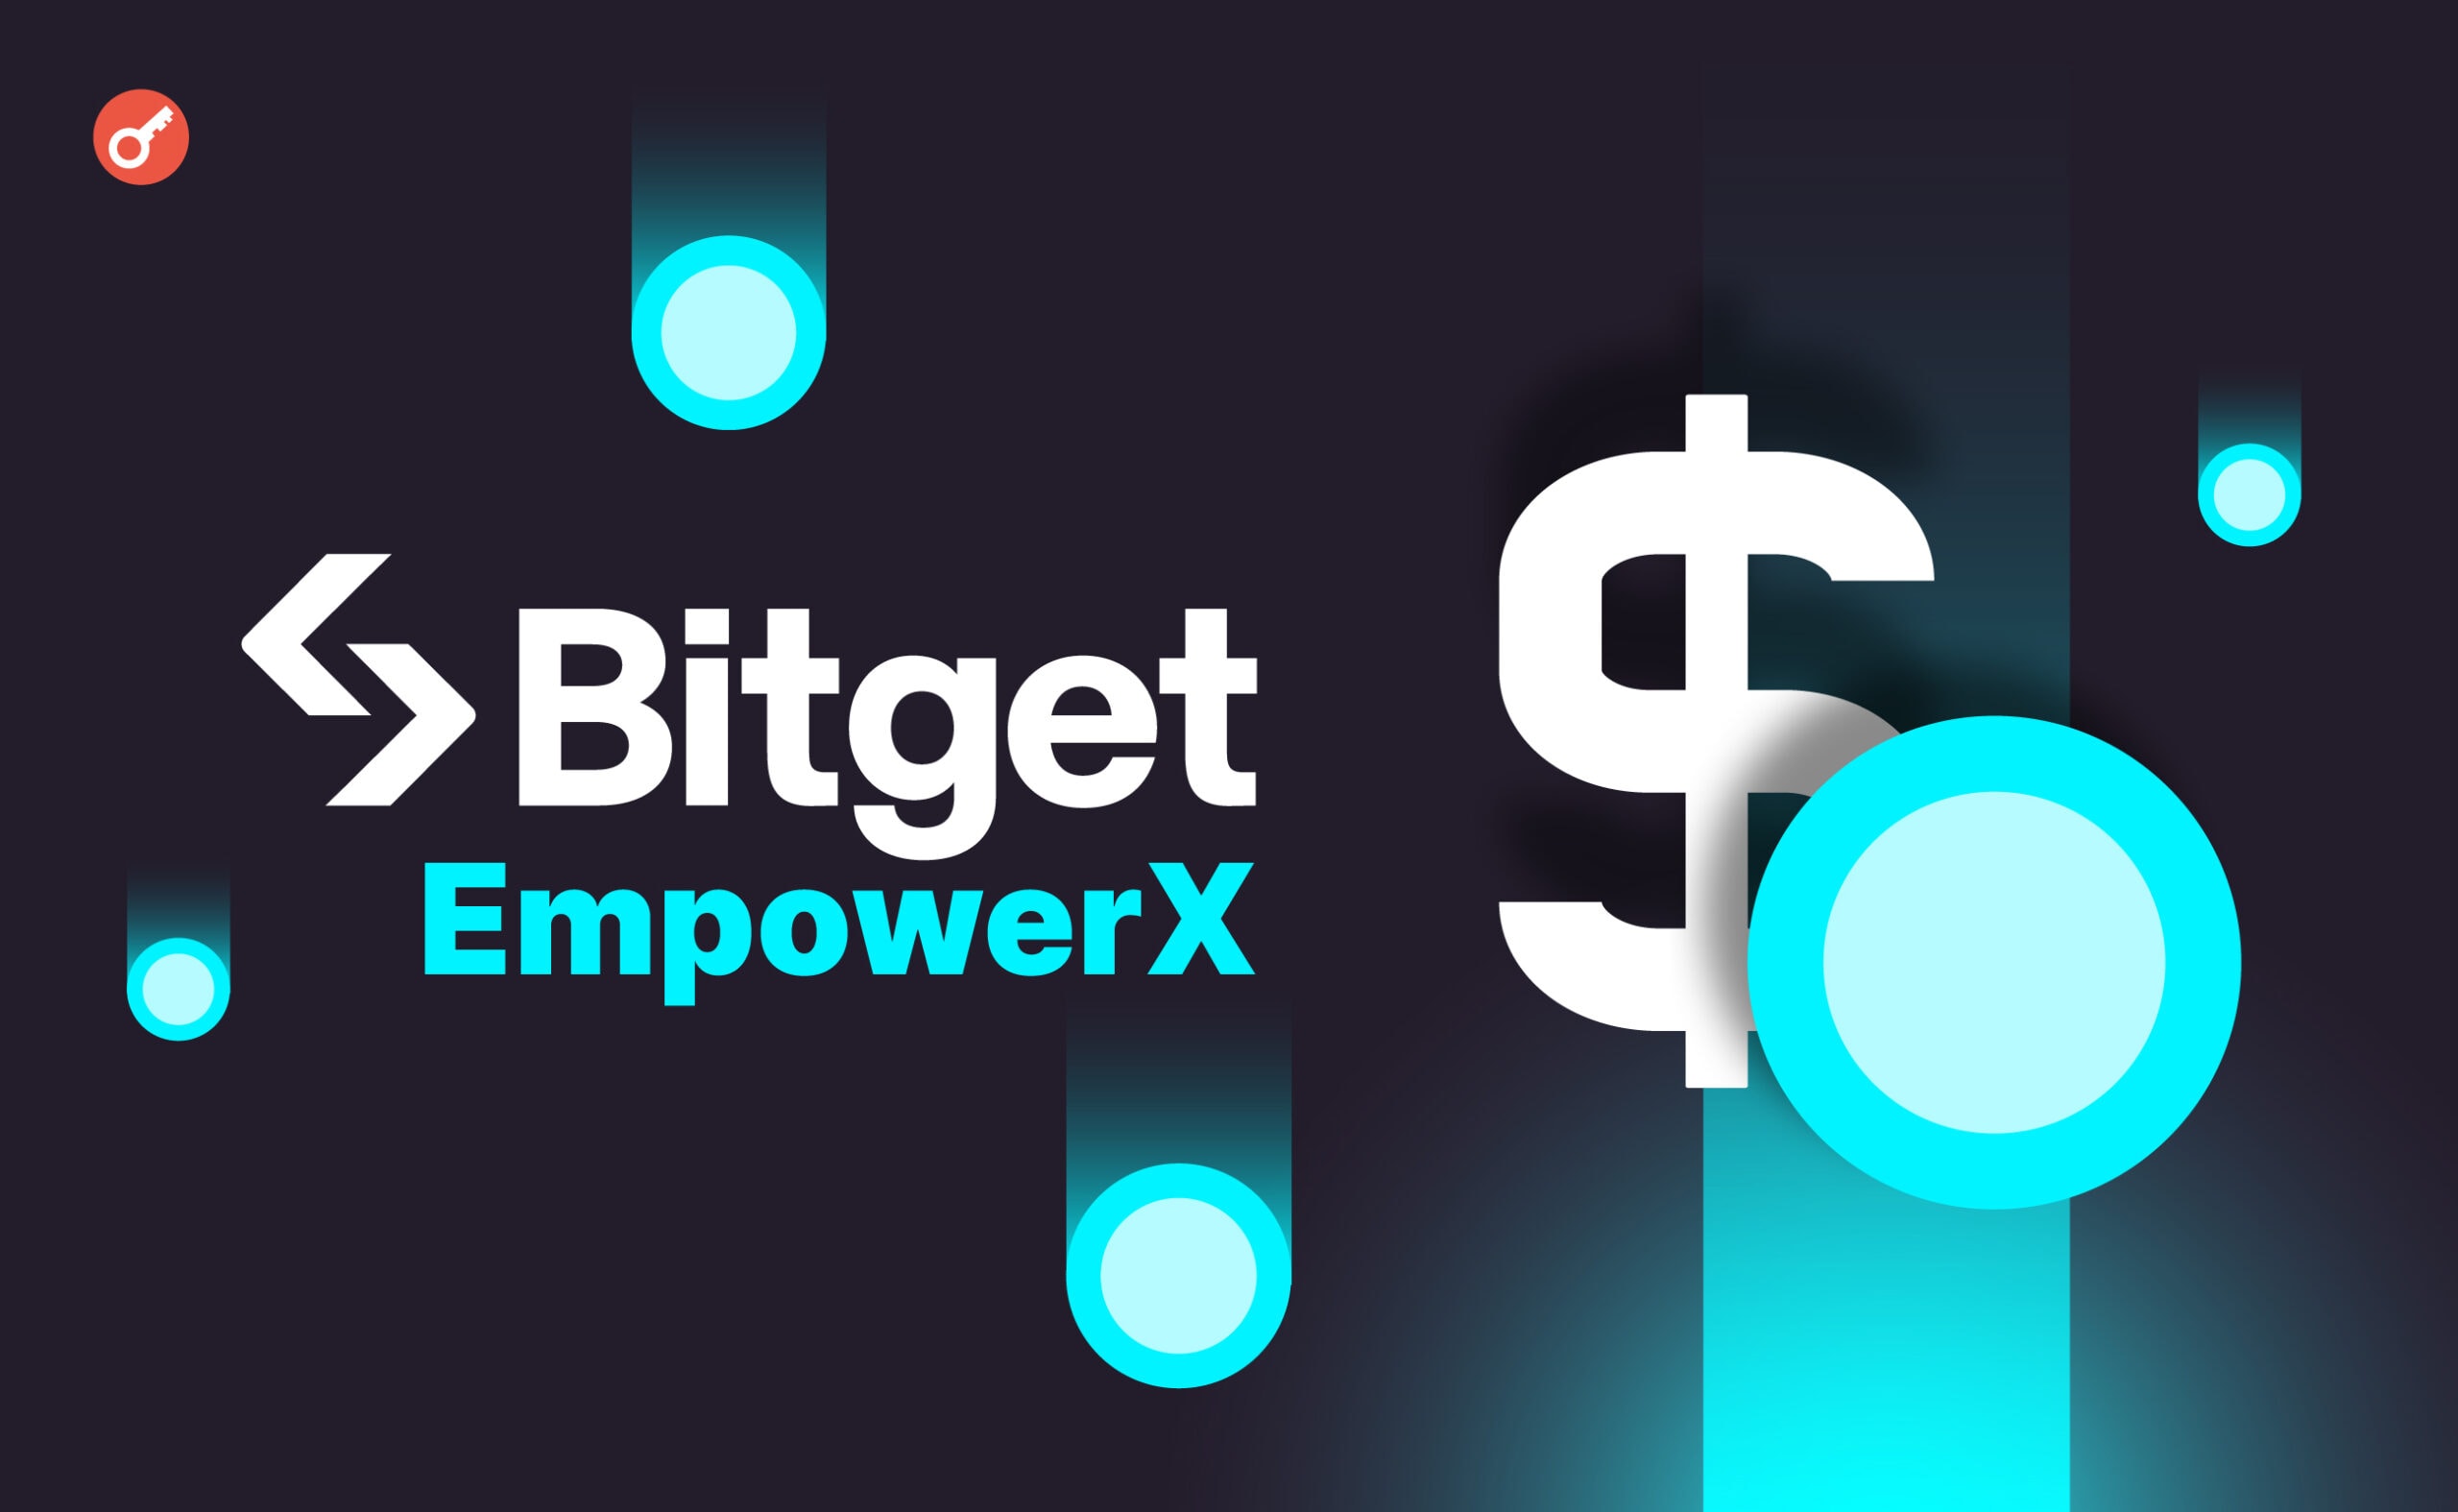 Биржа Bitget запустила фонд развития экосистемы объемом $100 млн. Заглавный коллаж новости.